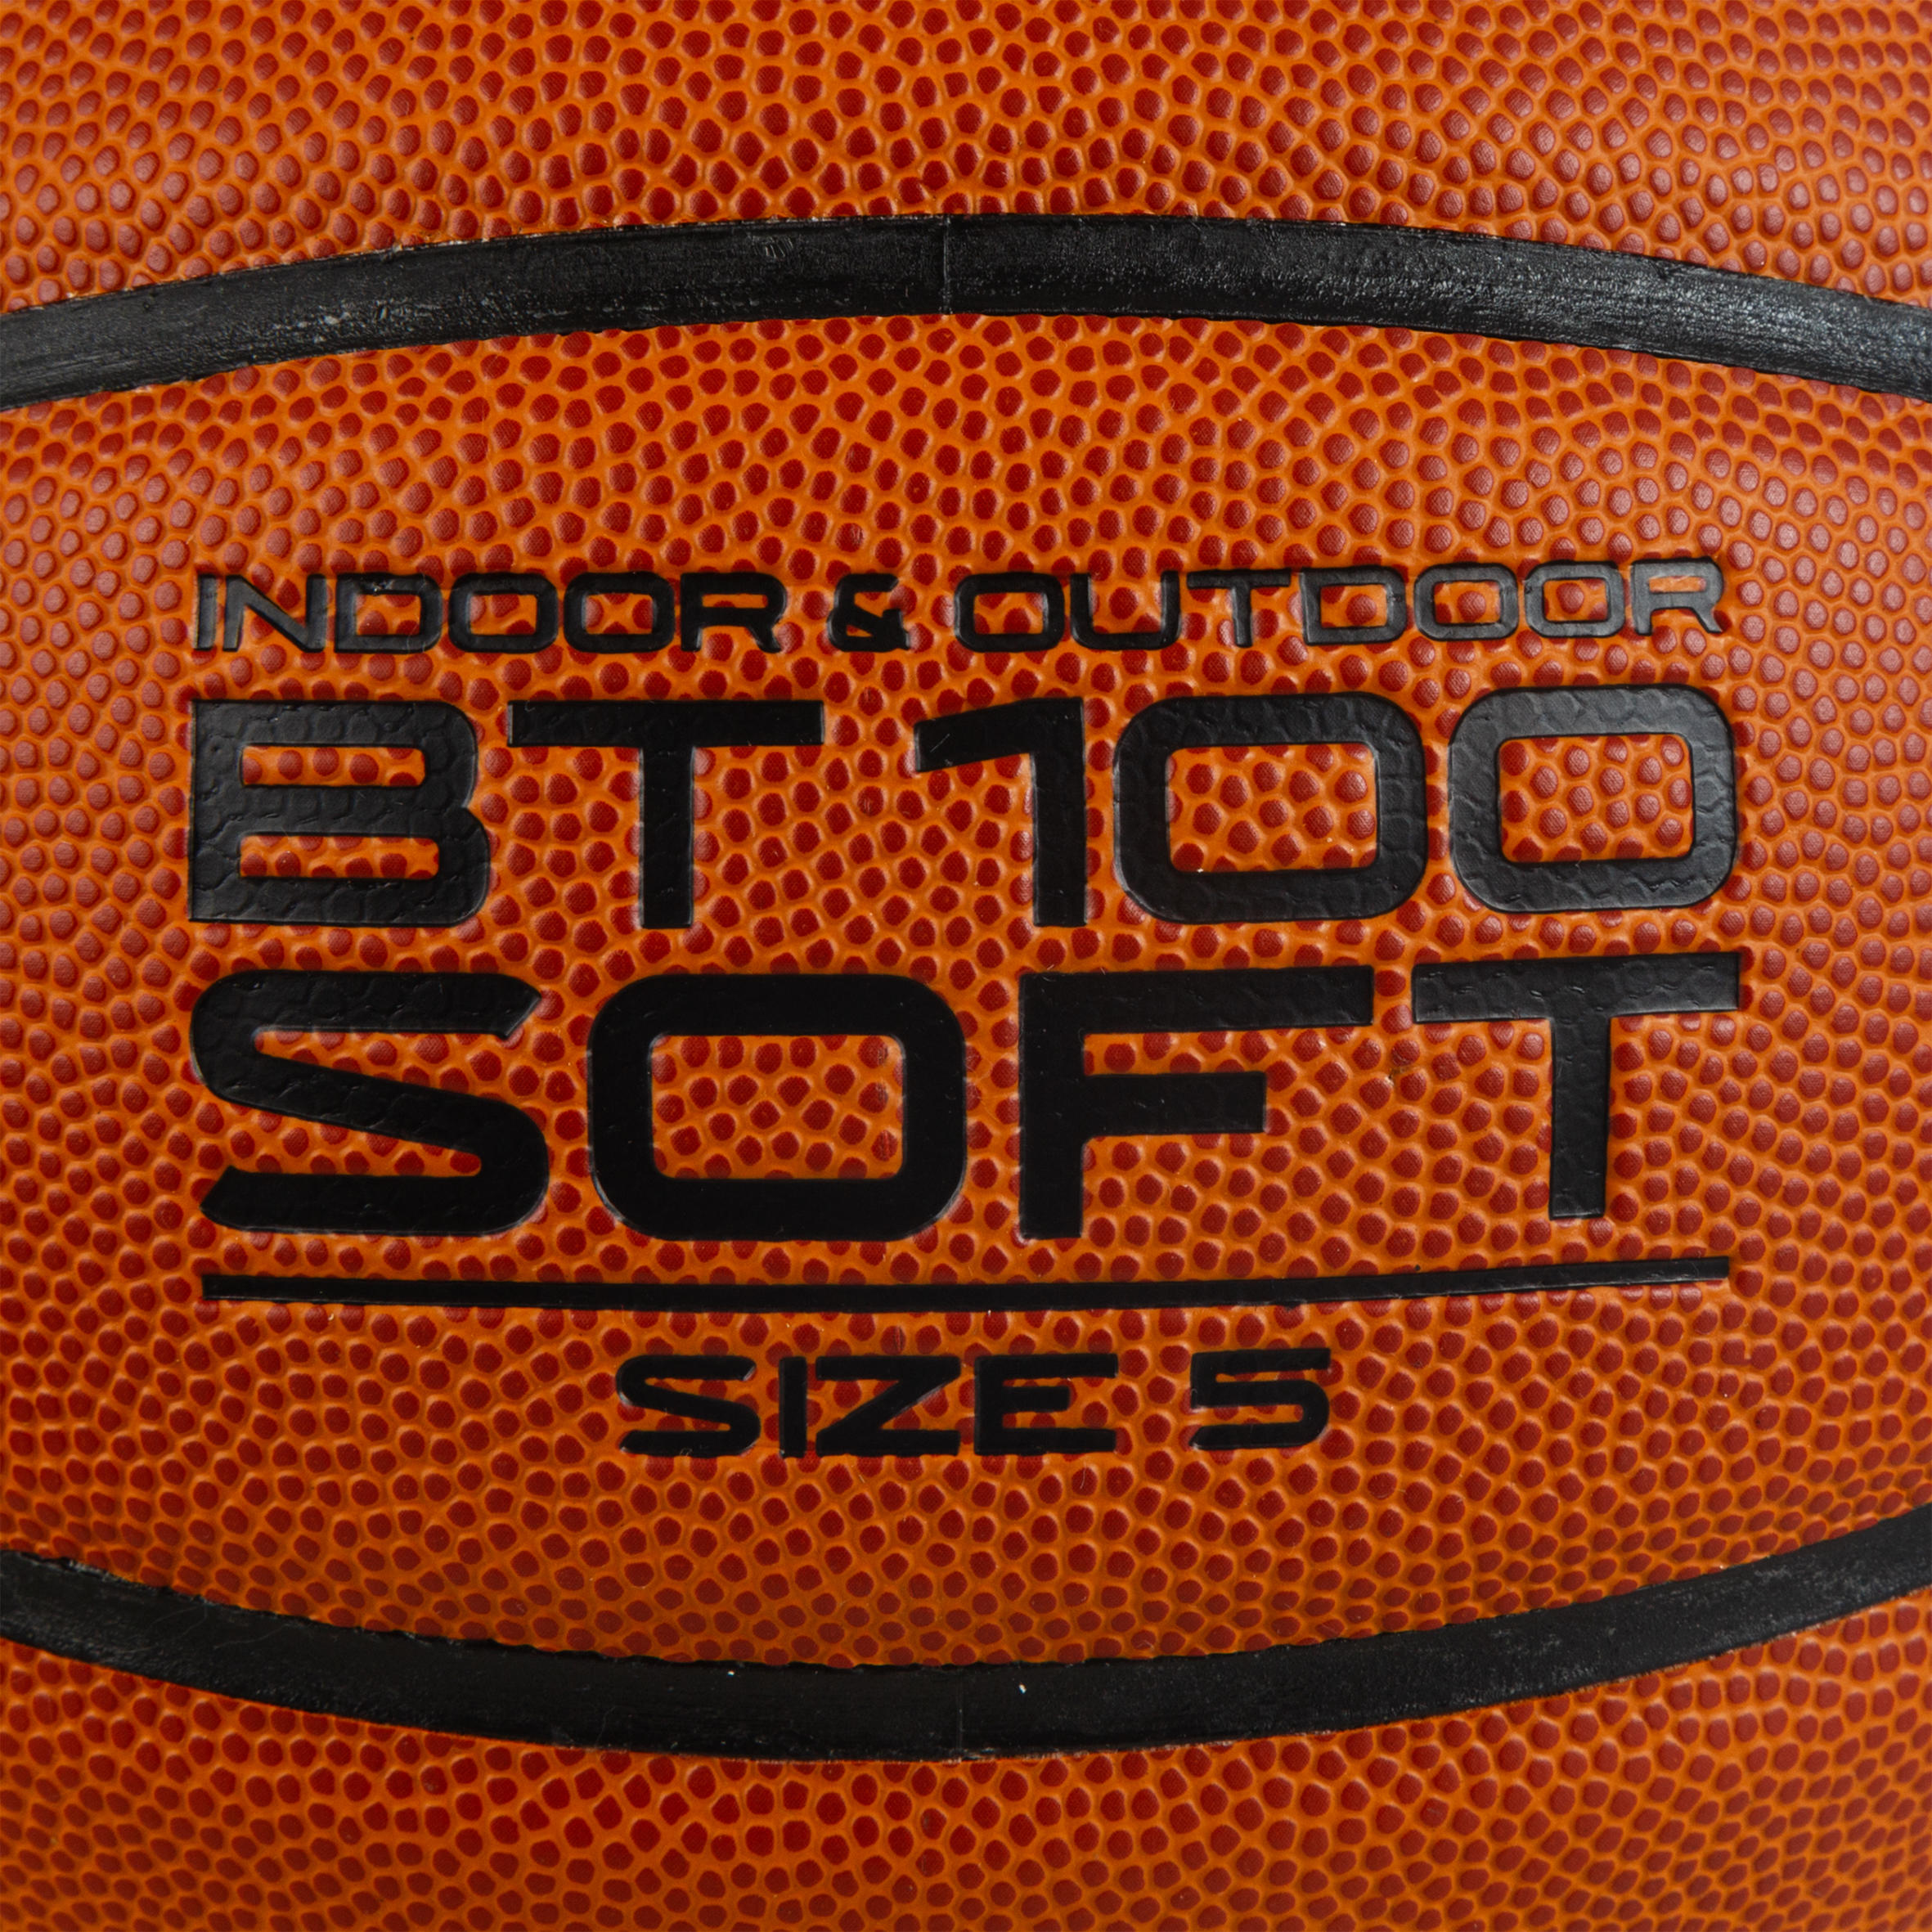 BT100 Kids' Size 5 Beginner Basketball, Under Age 10 - Orange 4/5